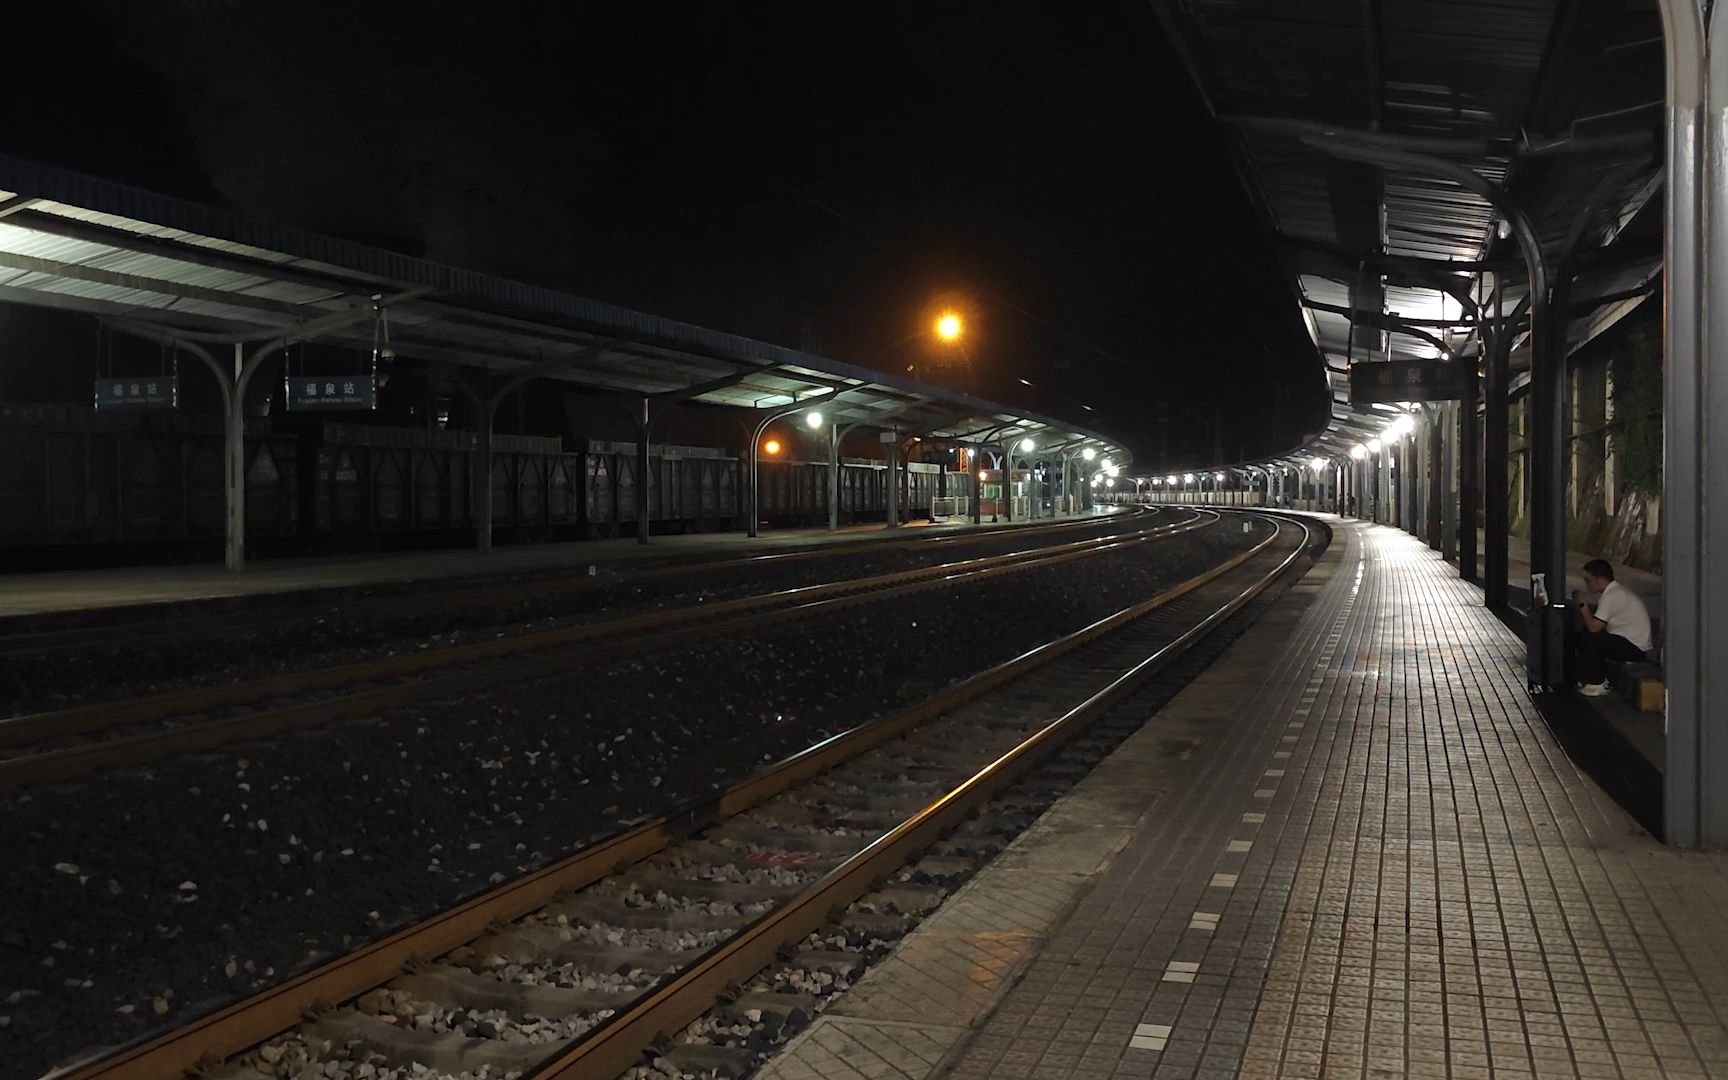 悬崖旁边的火车站,寂静的夜晚,孤独的候车人,没有站房,只有蟋蟀的叫声